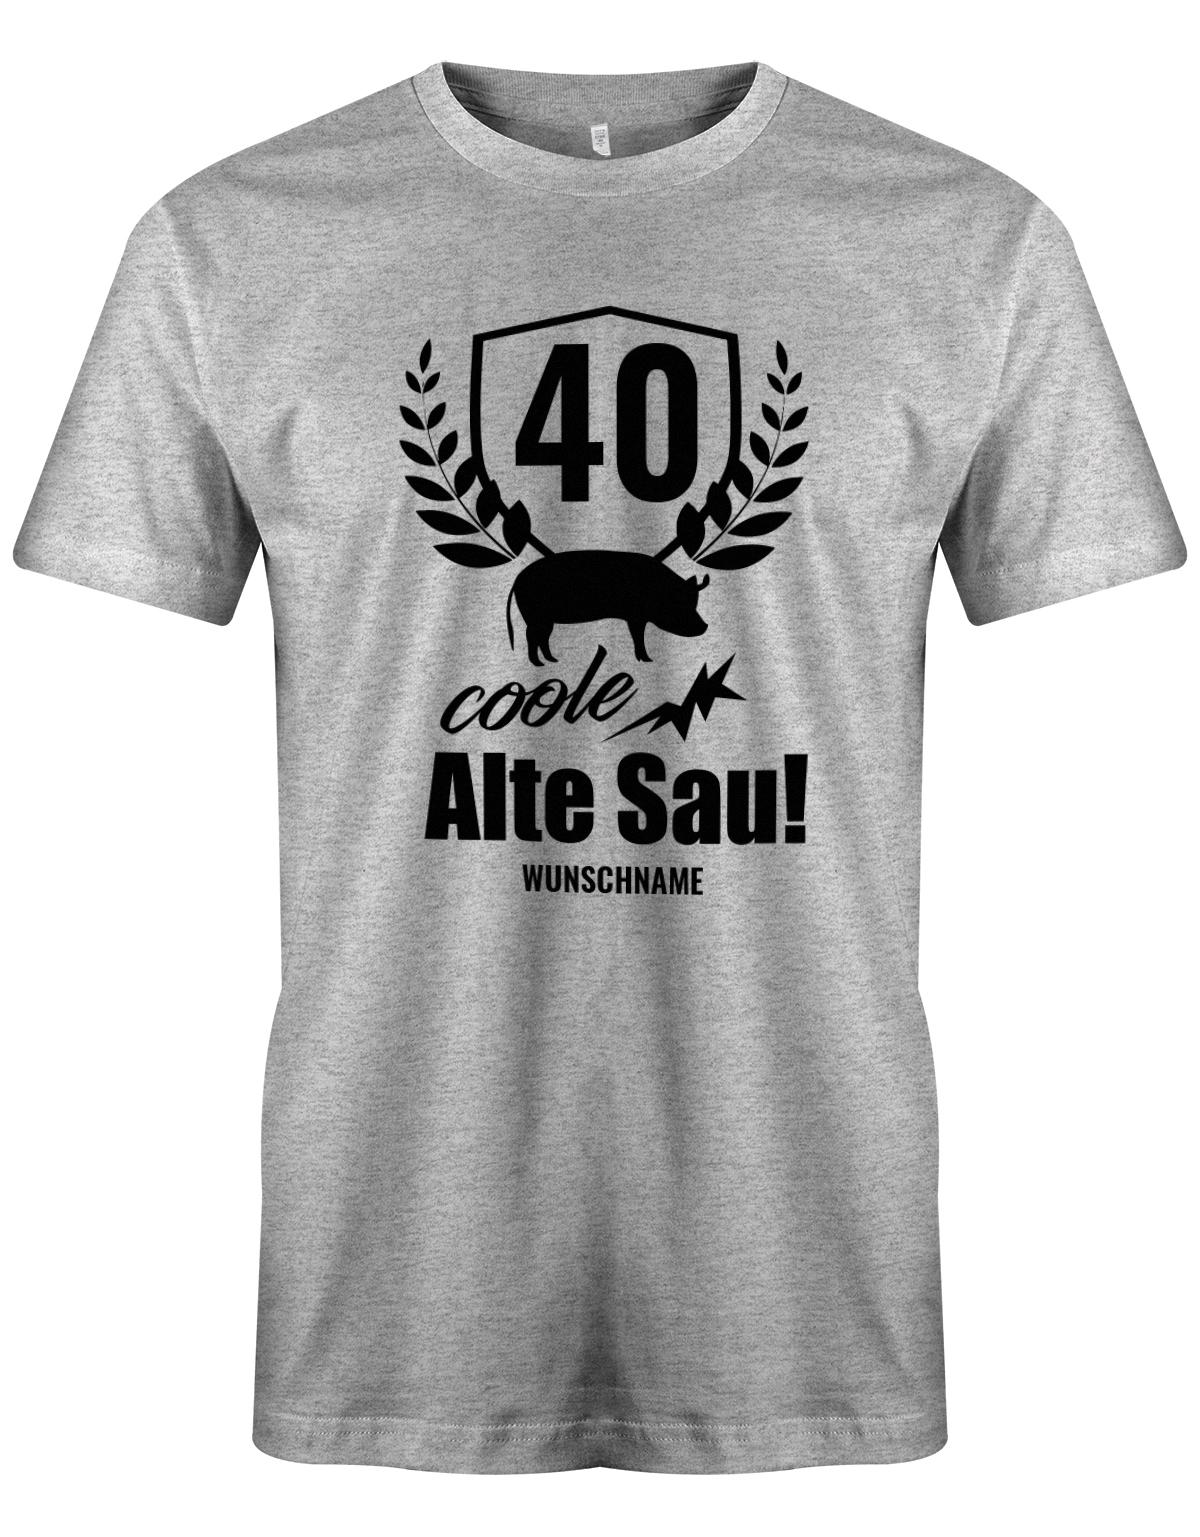 40 Alte Coole Sau Personalisiert mit Name - T-Shirt 40 Geburtstag Männer - 1983 myShirtStore Grau